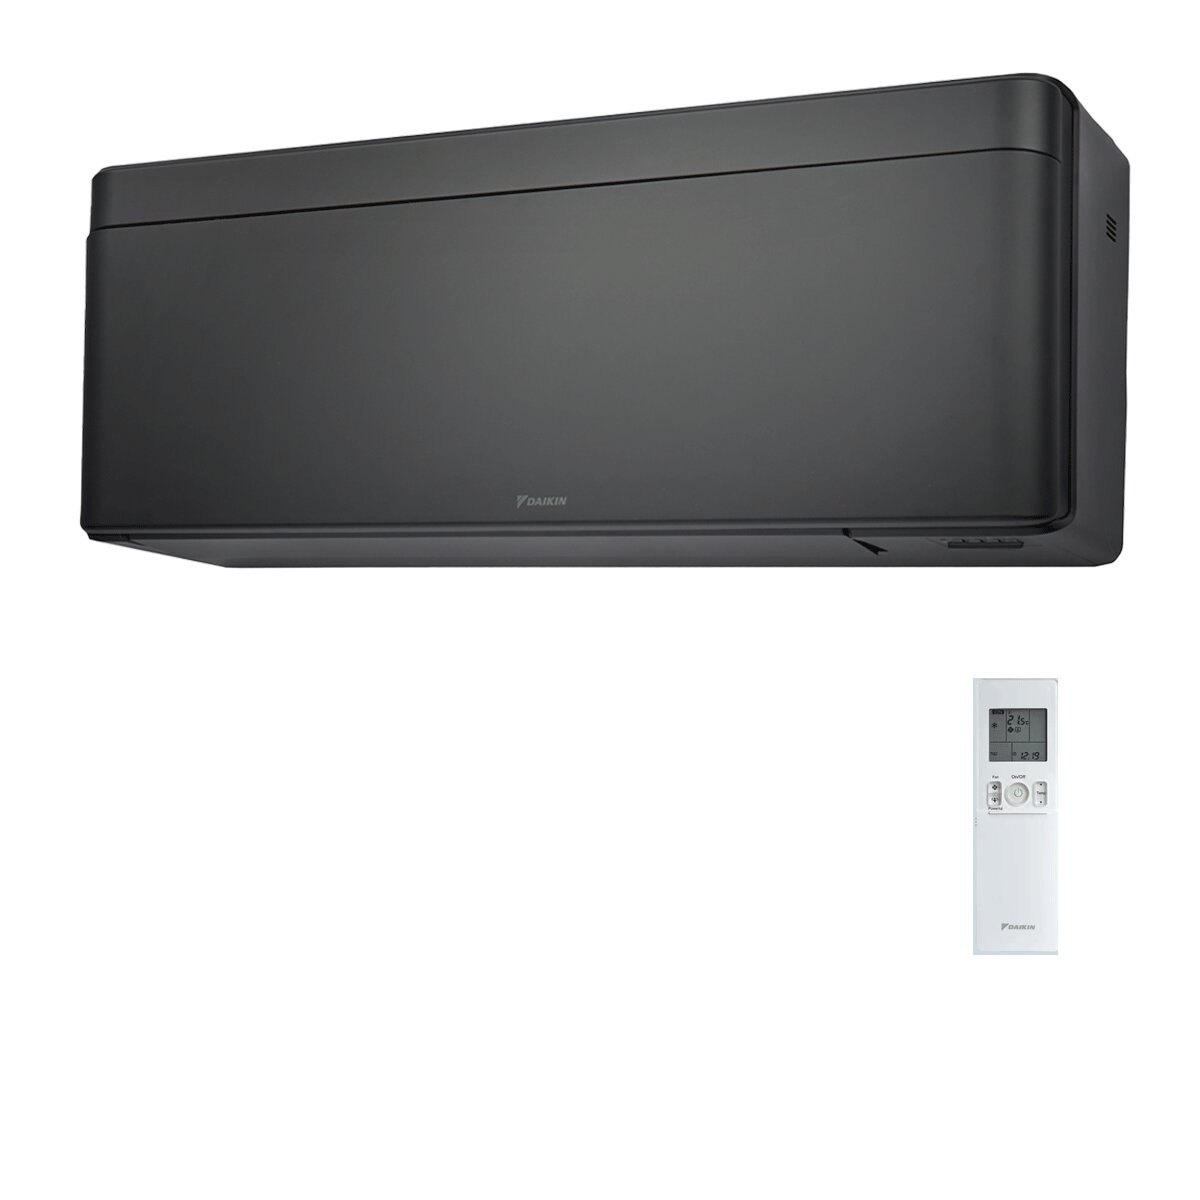 Daikin Stylish Total Black Klimaanlage 18000 BTU Inverter A++ WiFi R32 